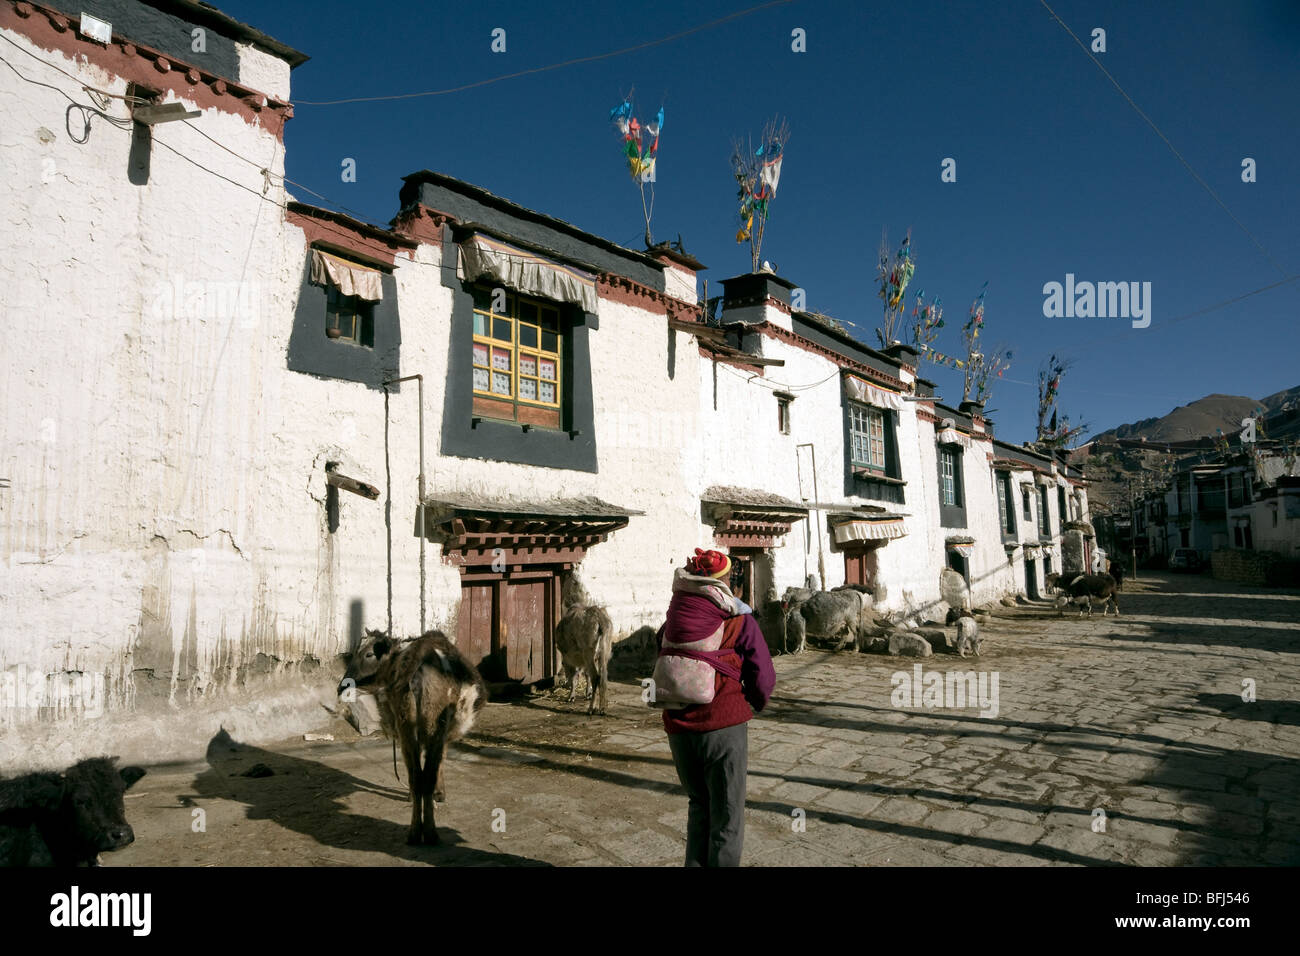 Il tibetano in abito tradizionale nel villaggio di strada vecchia gyantse Foto Stock